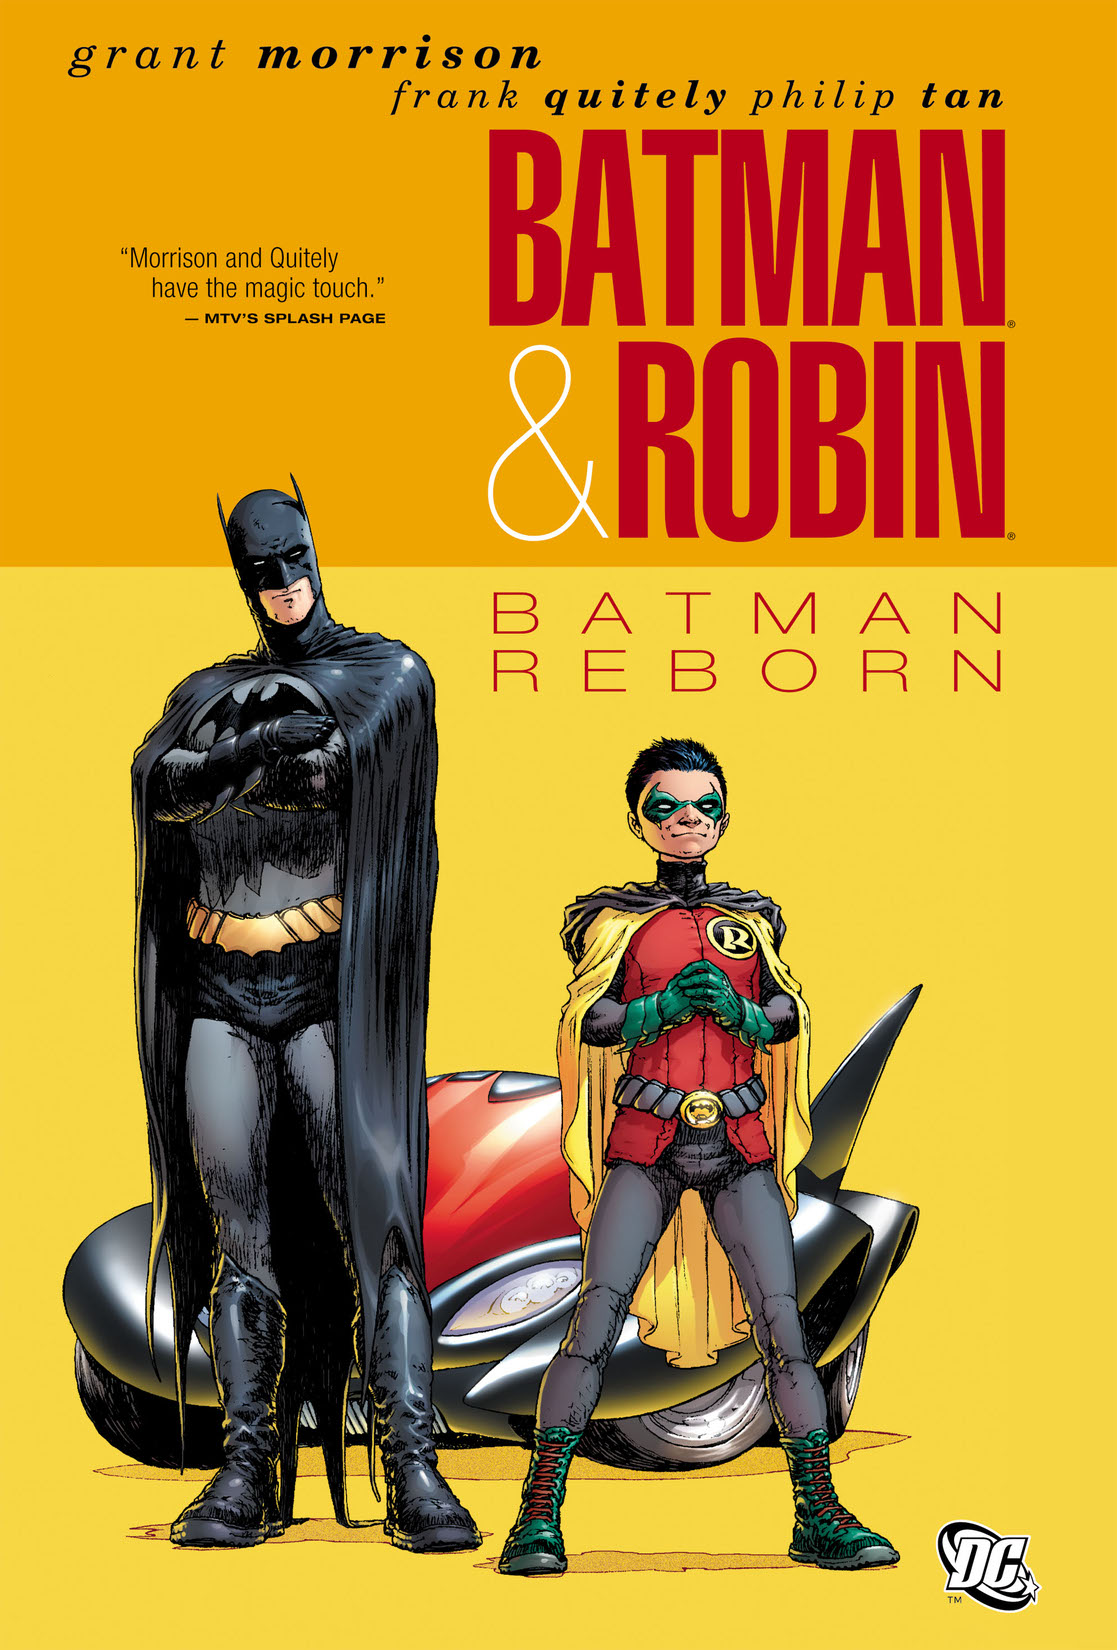 Batman & Robin Vol. 1: Batman Reborn preview images